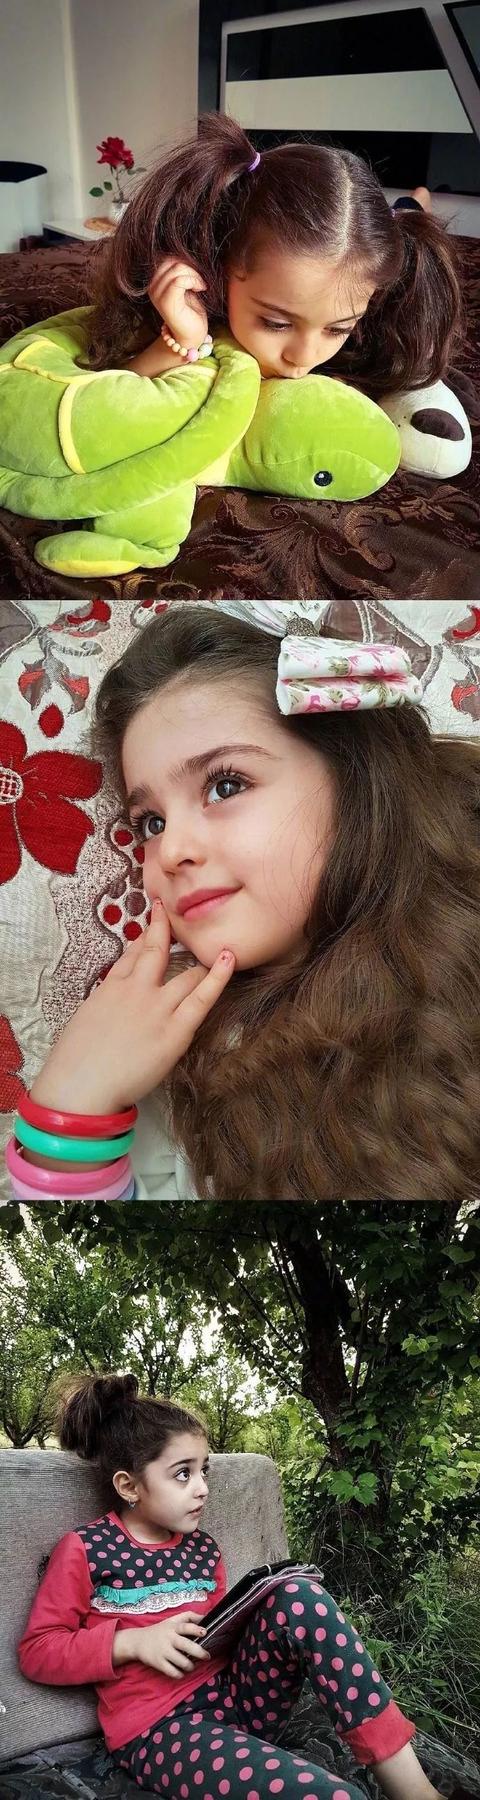 伊朗8歲小女孩被稱爲“全球最美”！因太美，父親辭職做貼身保镖